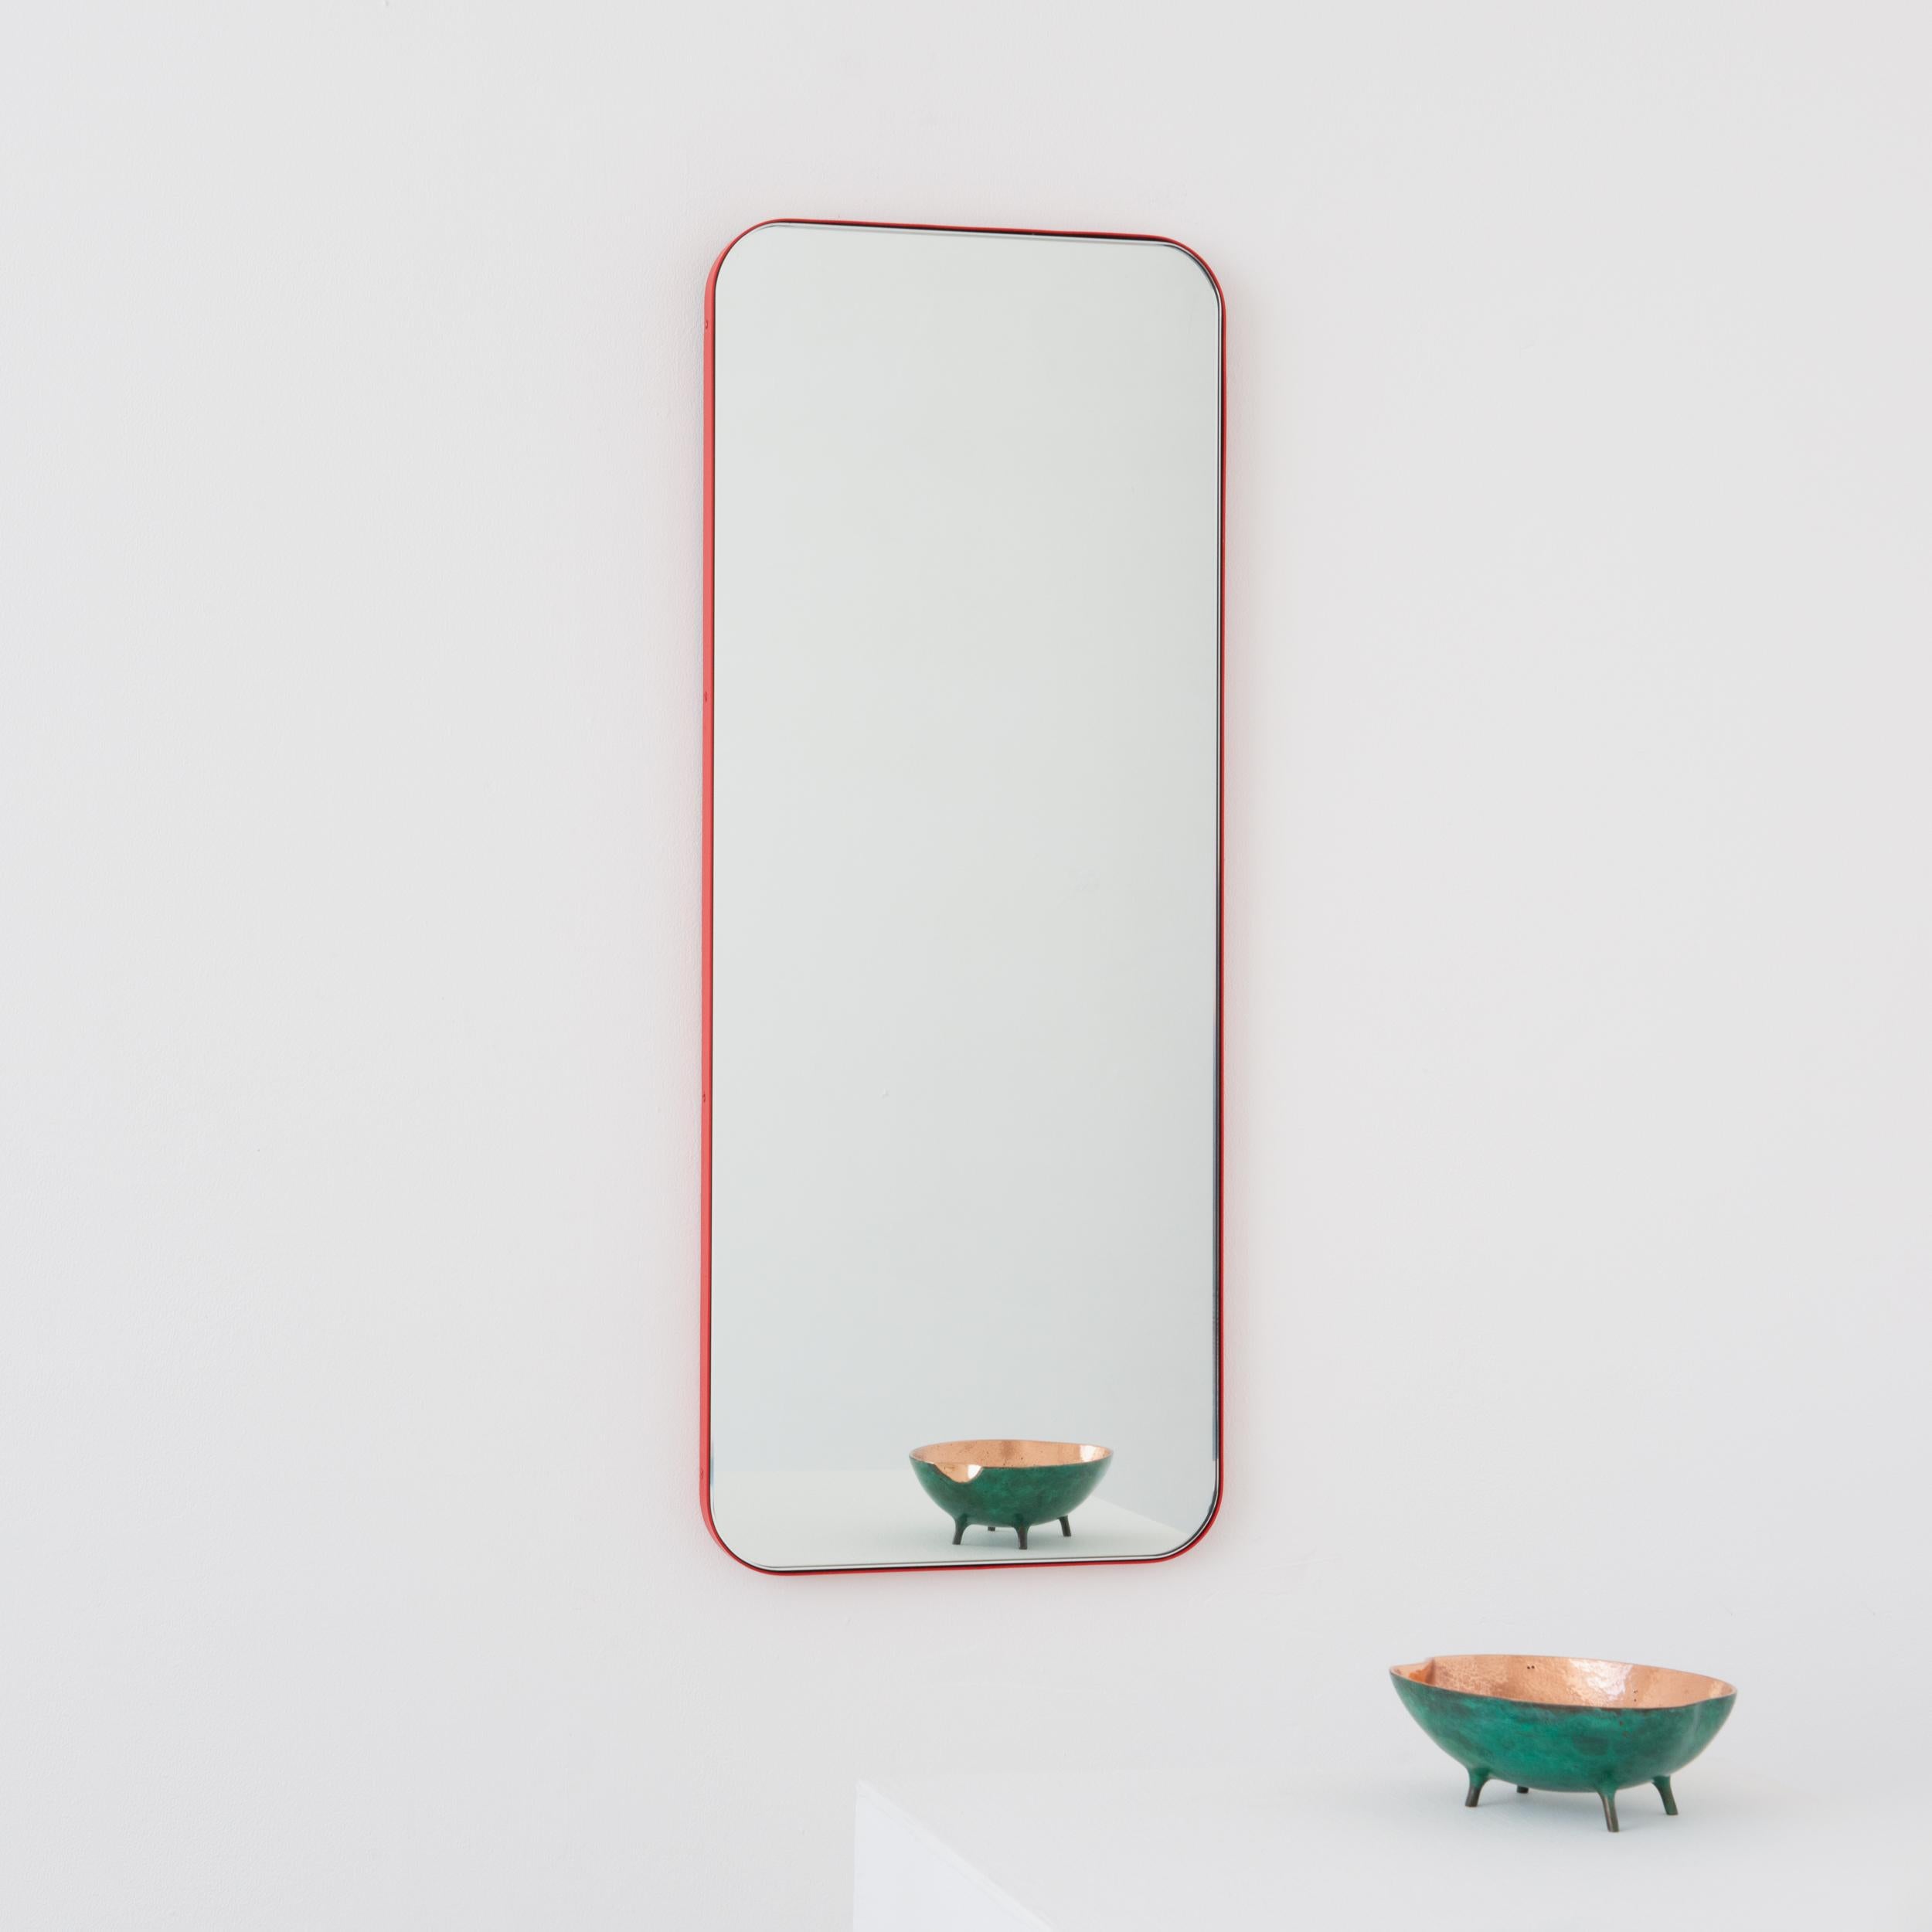 Miroir rectangulaire minimaliste avec un cadre rouge moderne. Une partie de la charmante collection Quadris, conçue et fabriquée à la main à Londres, au Royaume-Uni. 

Fourni avec une barre en z spécialisée pour une installation facile. Un système